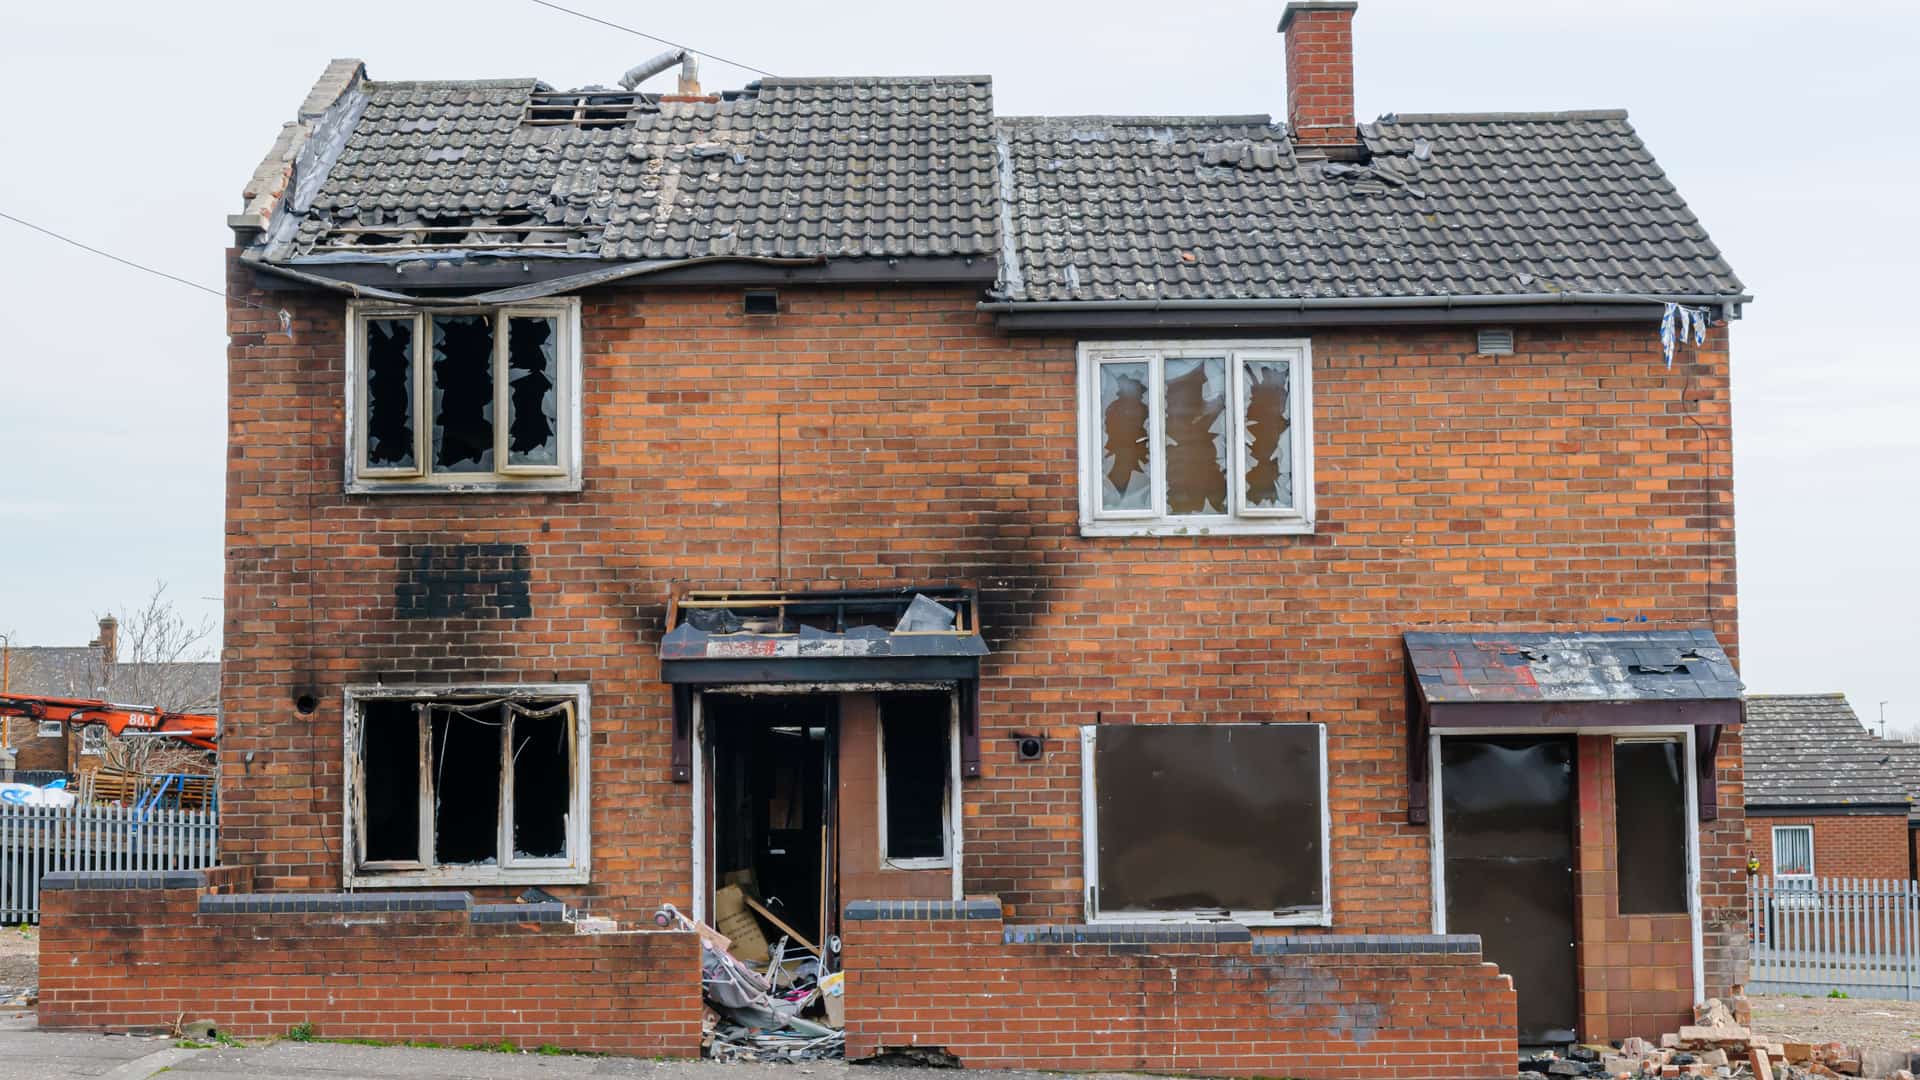 Vivienda que ha sufrido un incendio a la cual el seguro ha aplicado la regla proporcional